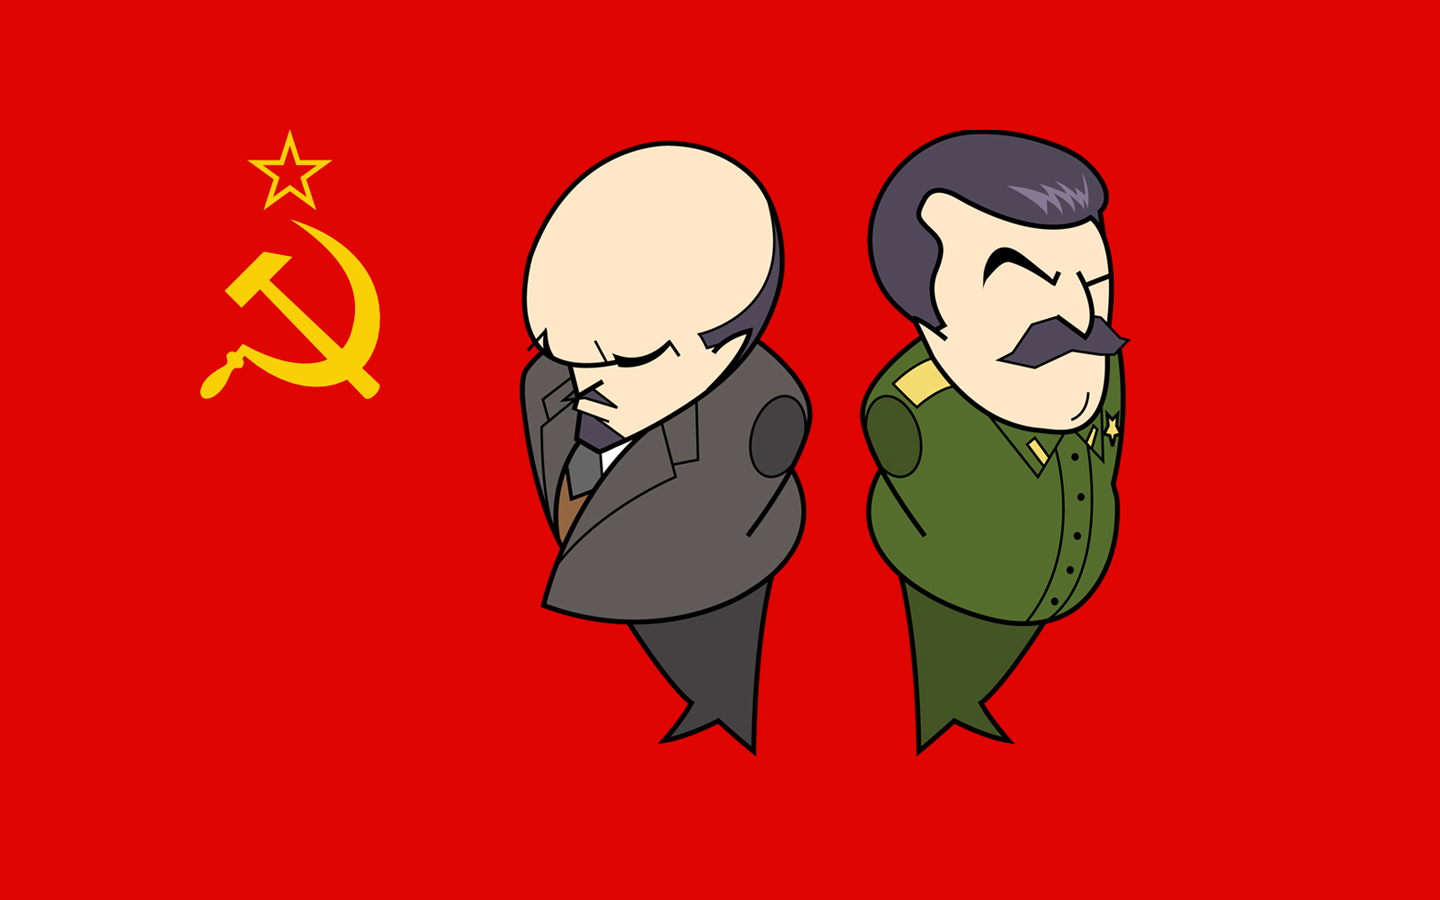 Papel De Parede Lenin E Stalin O Marxista Leninista